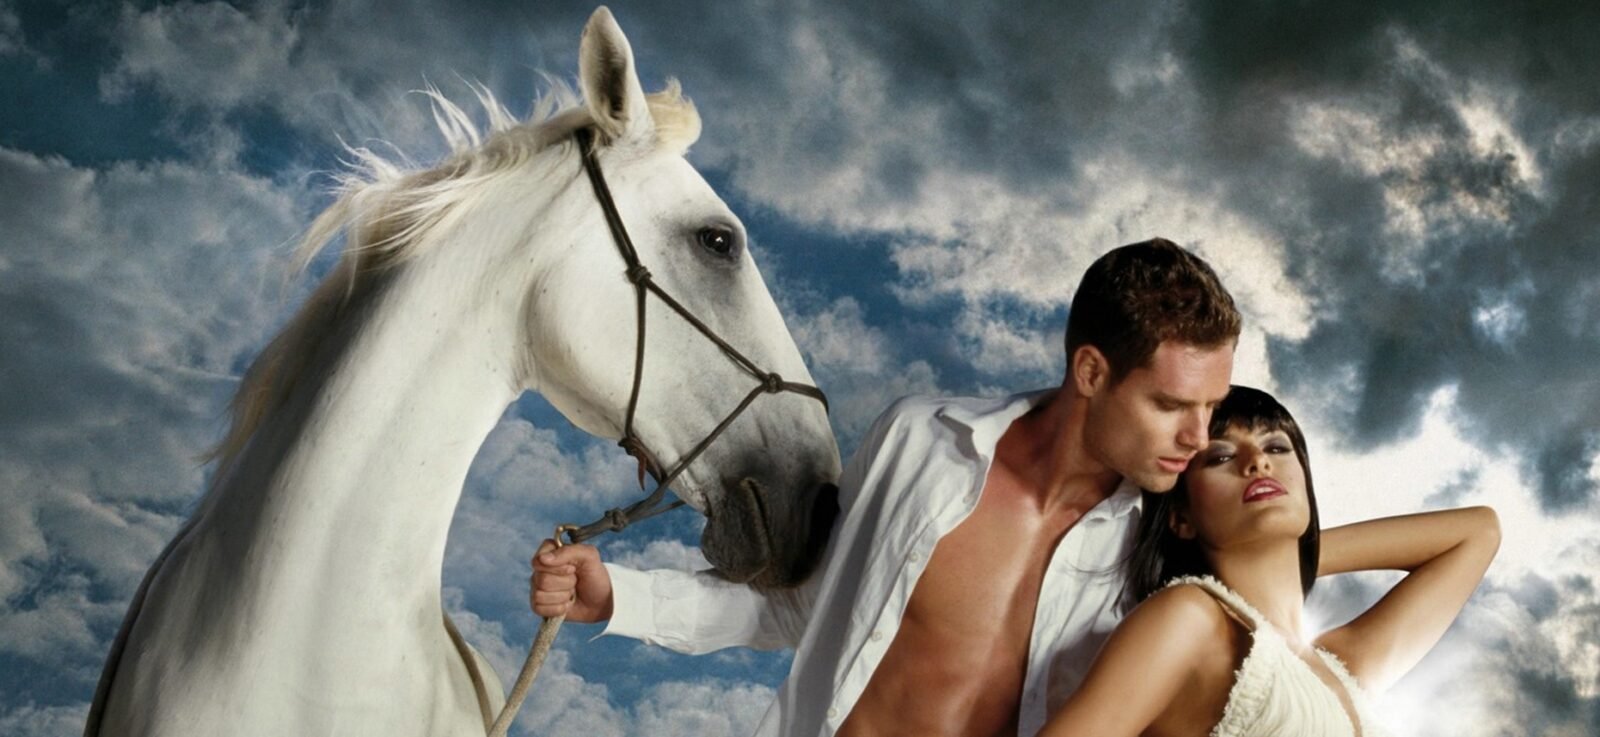 Мечтай кон. Принц на белом коне. Парень на белом коне. Принц на лошади. Белый конь на принце.